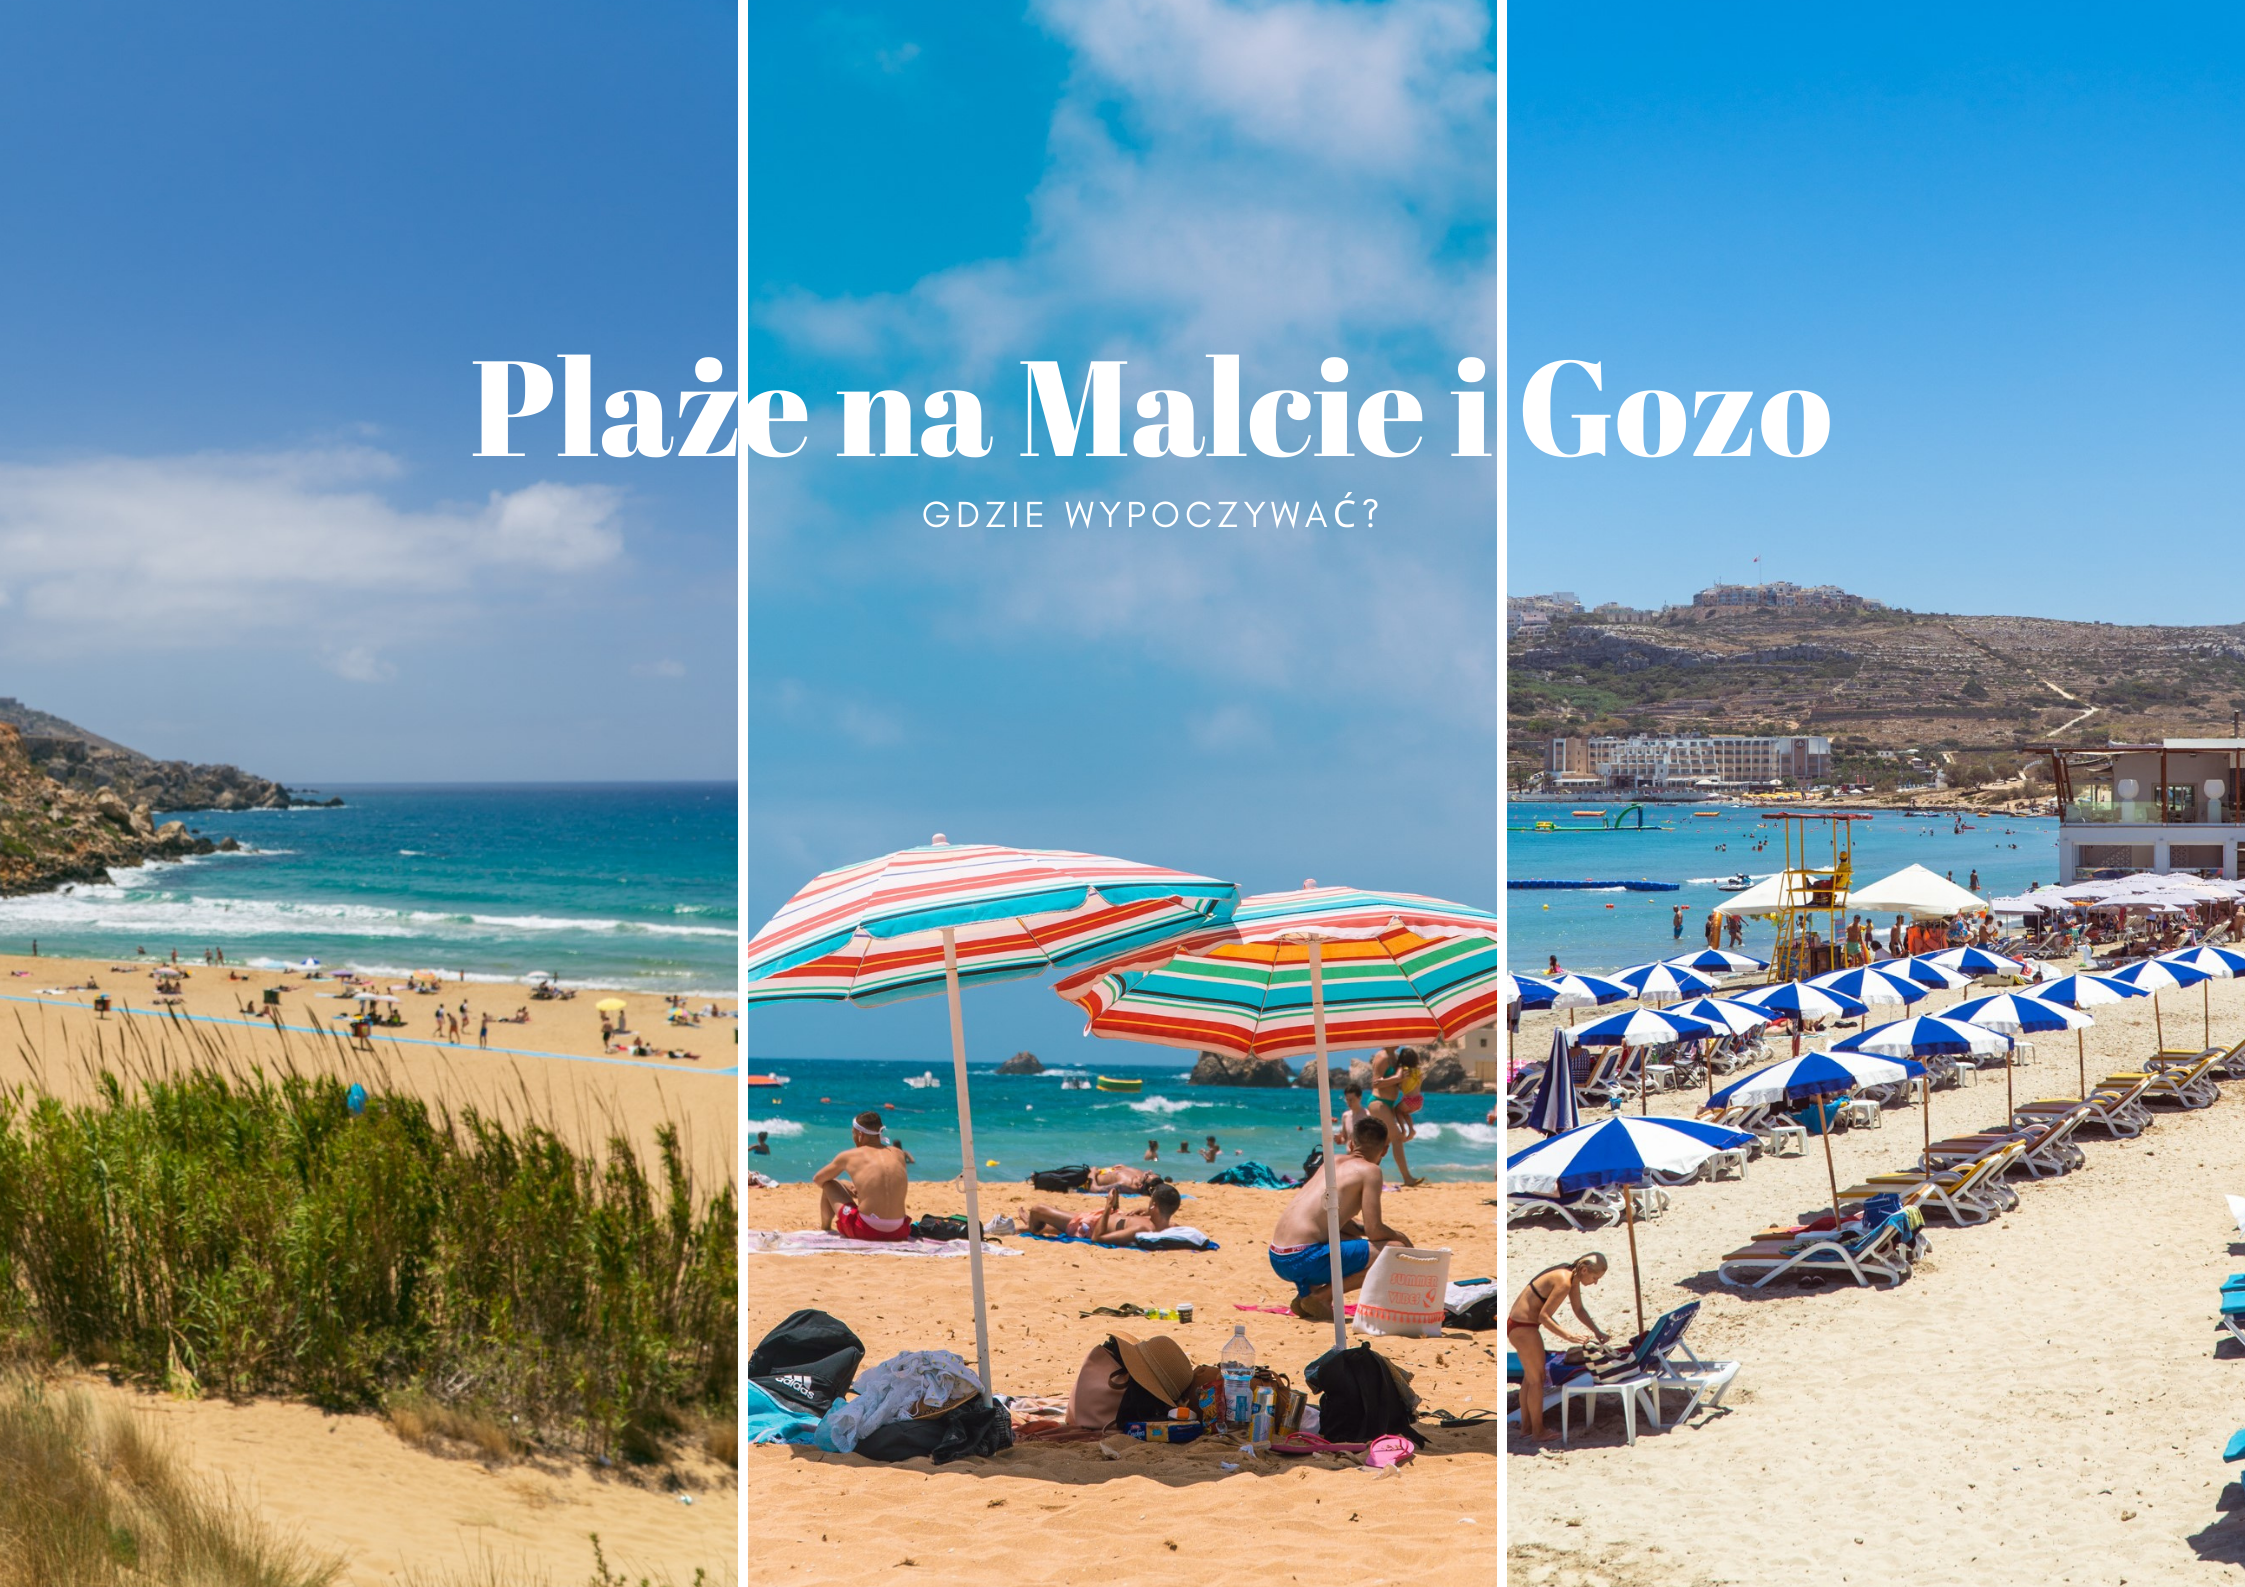 Plaże na Malcie i Gozo